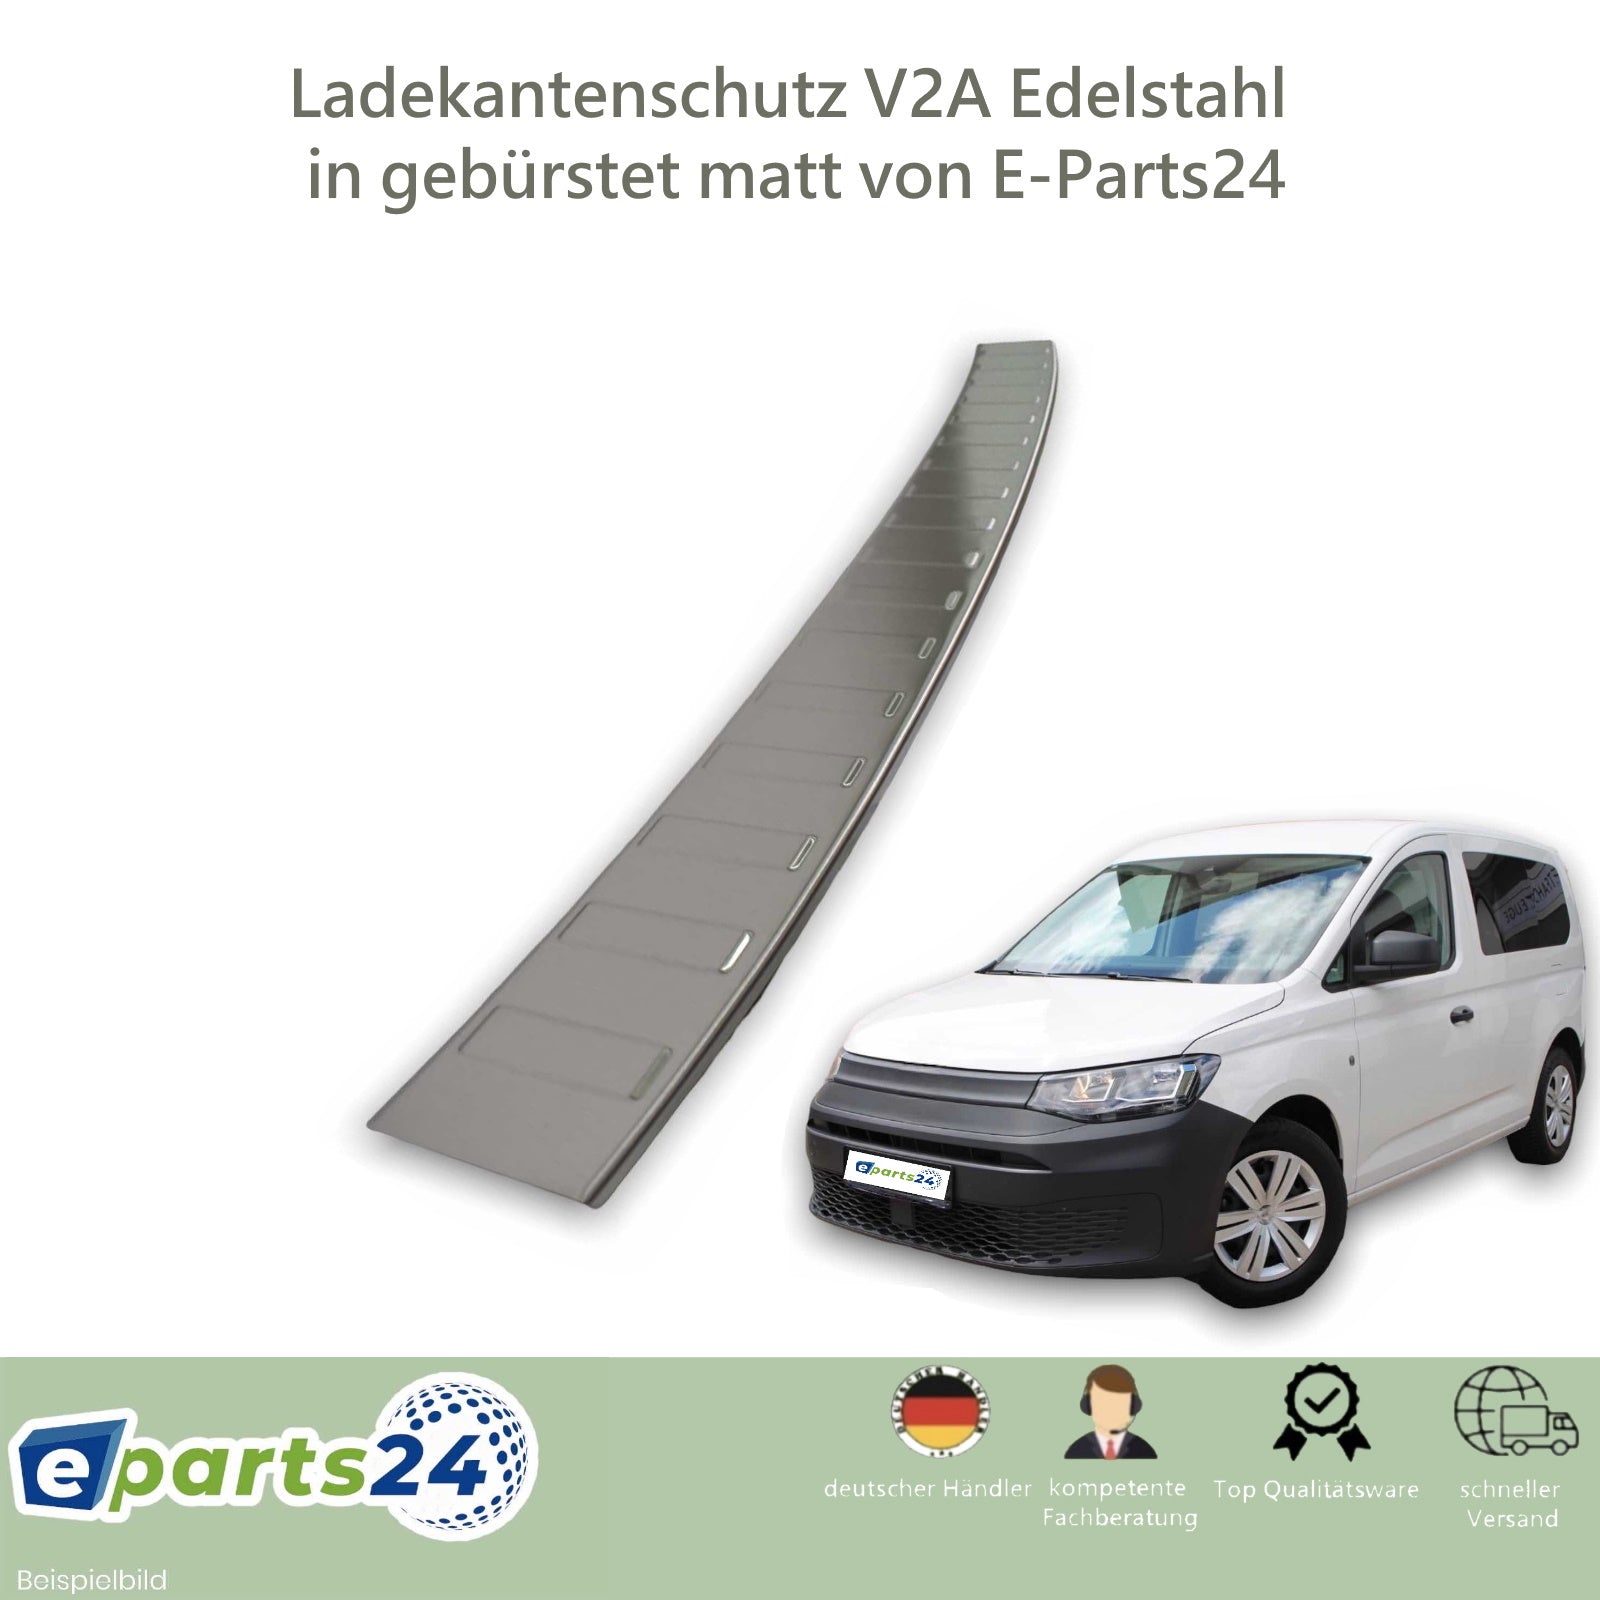 Ladekantenschutz Heckschutz für mit V Abkantung 5 VW Caddy Edelstahl ab E-Parts24 2020- gebürstet